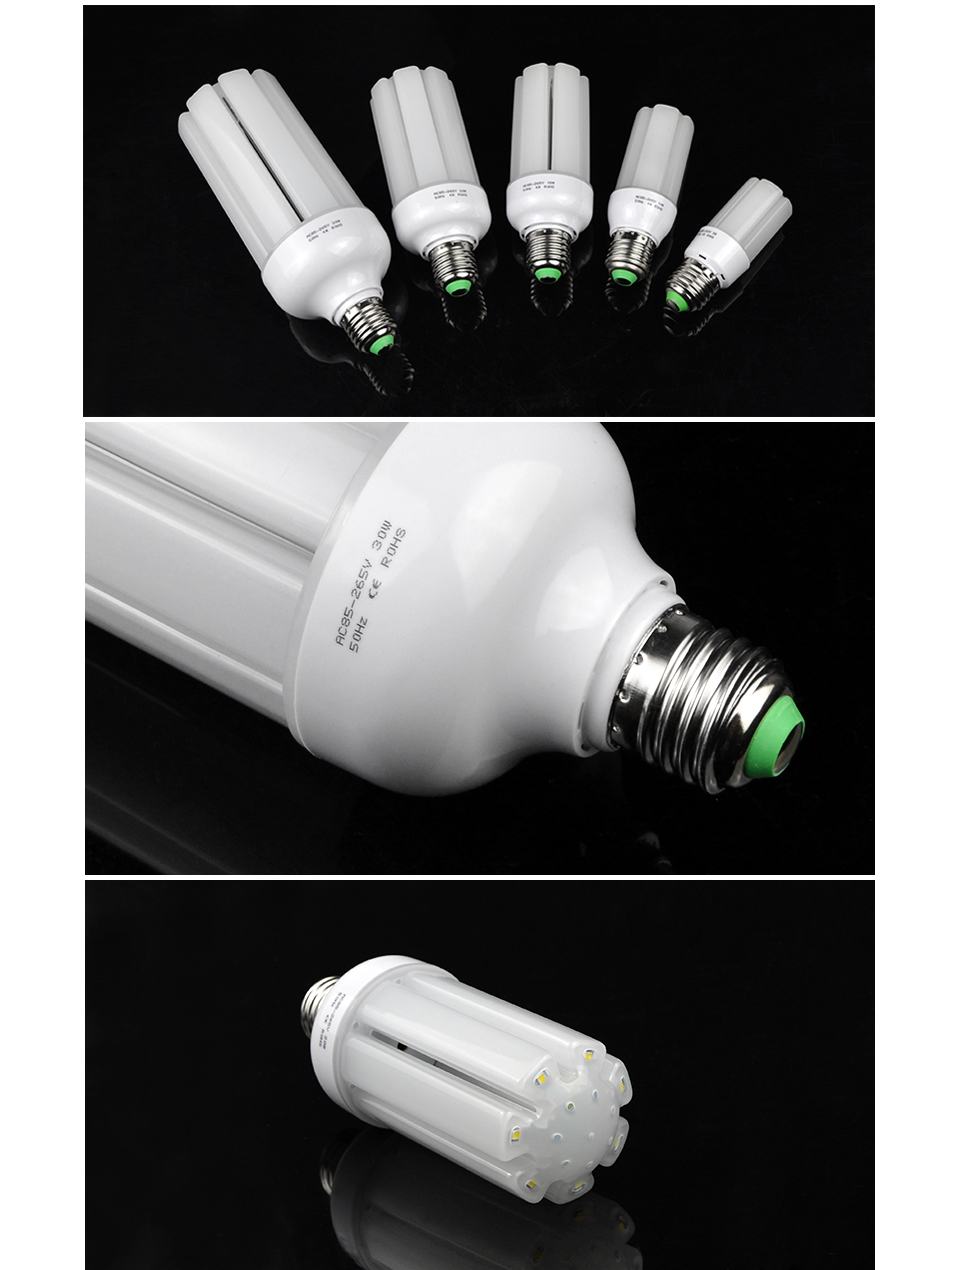 PIR Infrared Motion Sensor LED lamp light Switch Holder E27 220V LED light Kit Stair PIR lampholder lighting